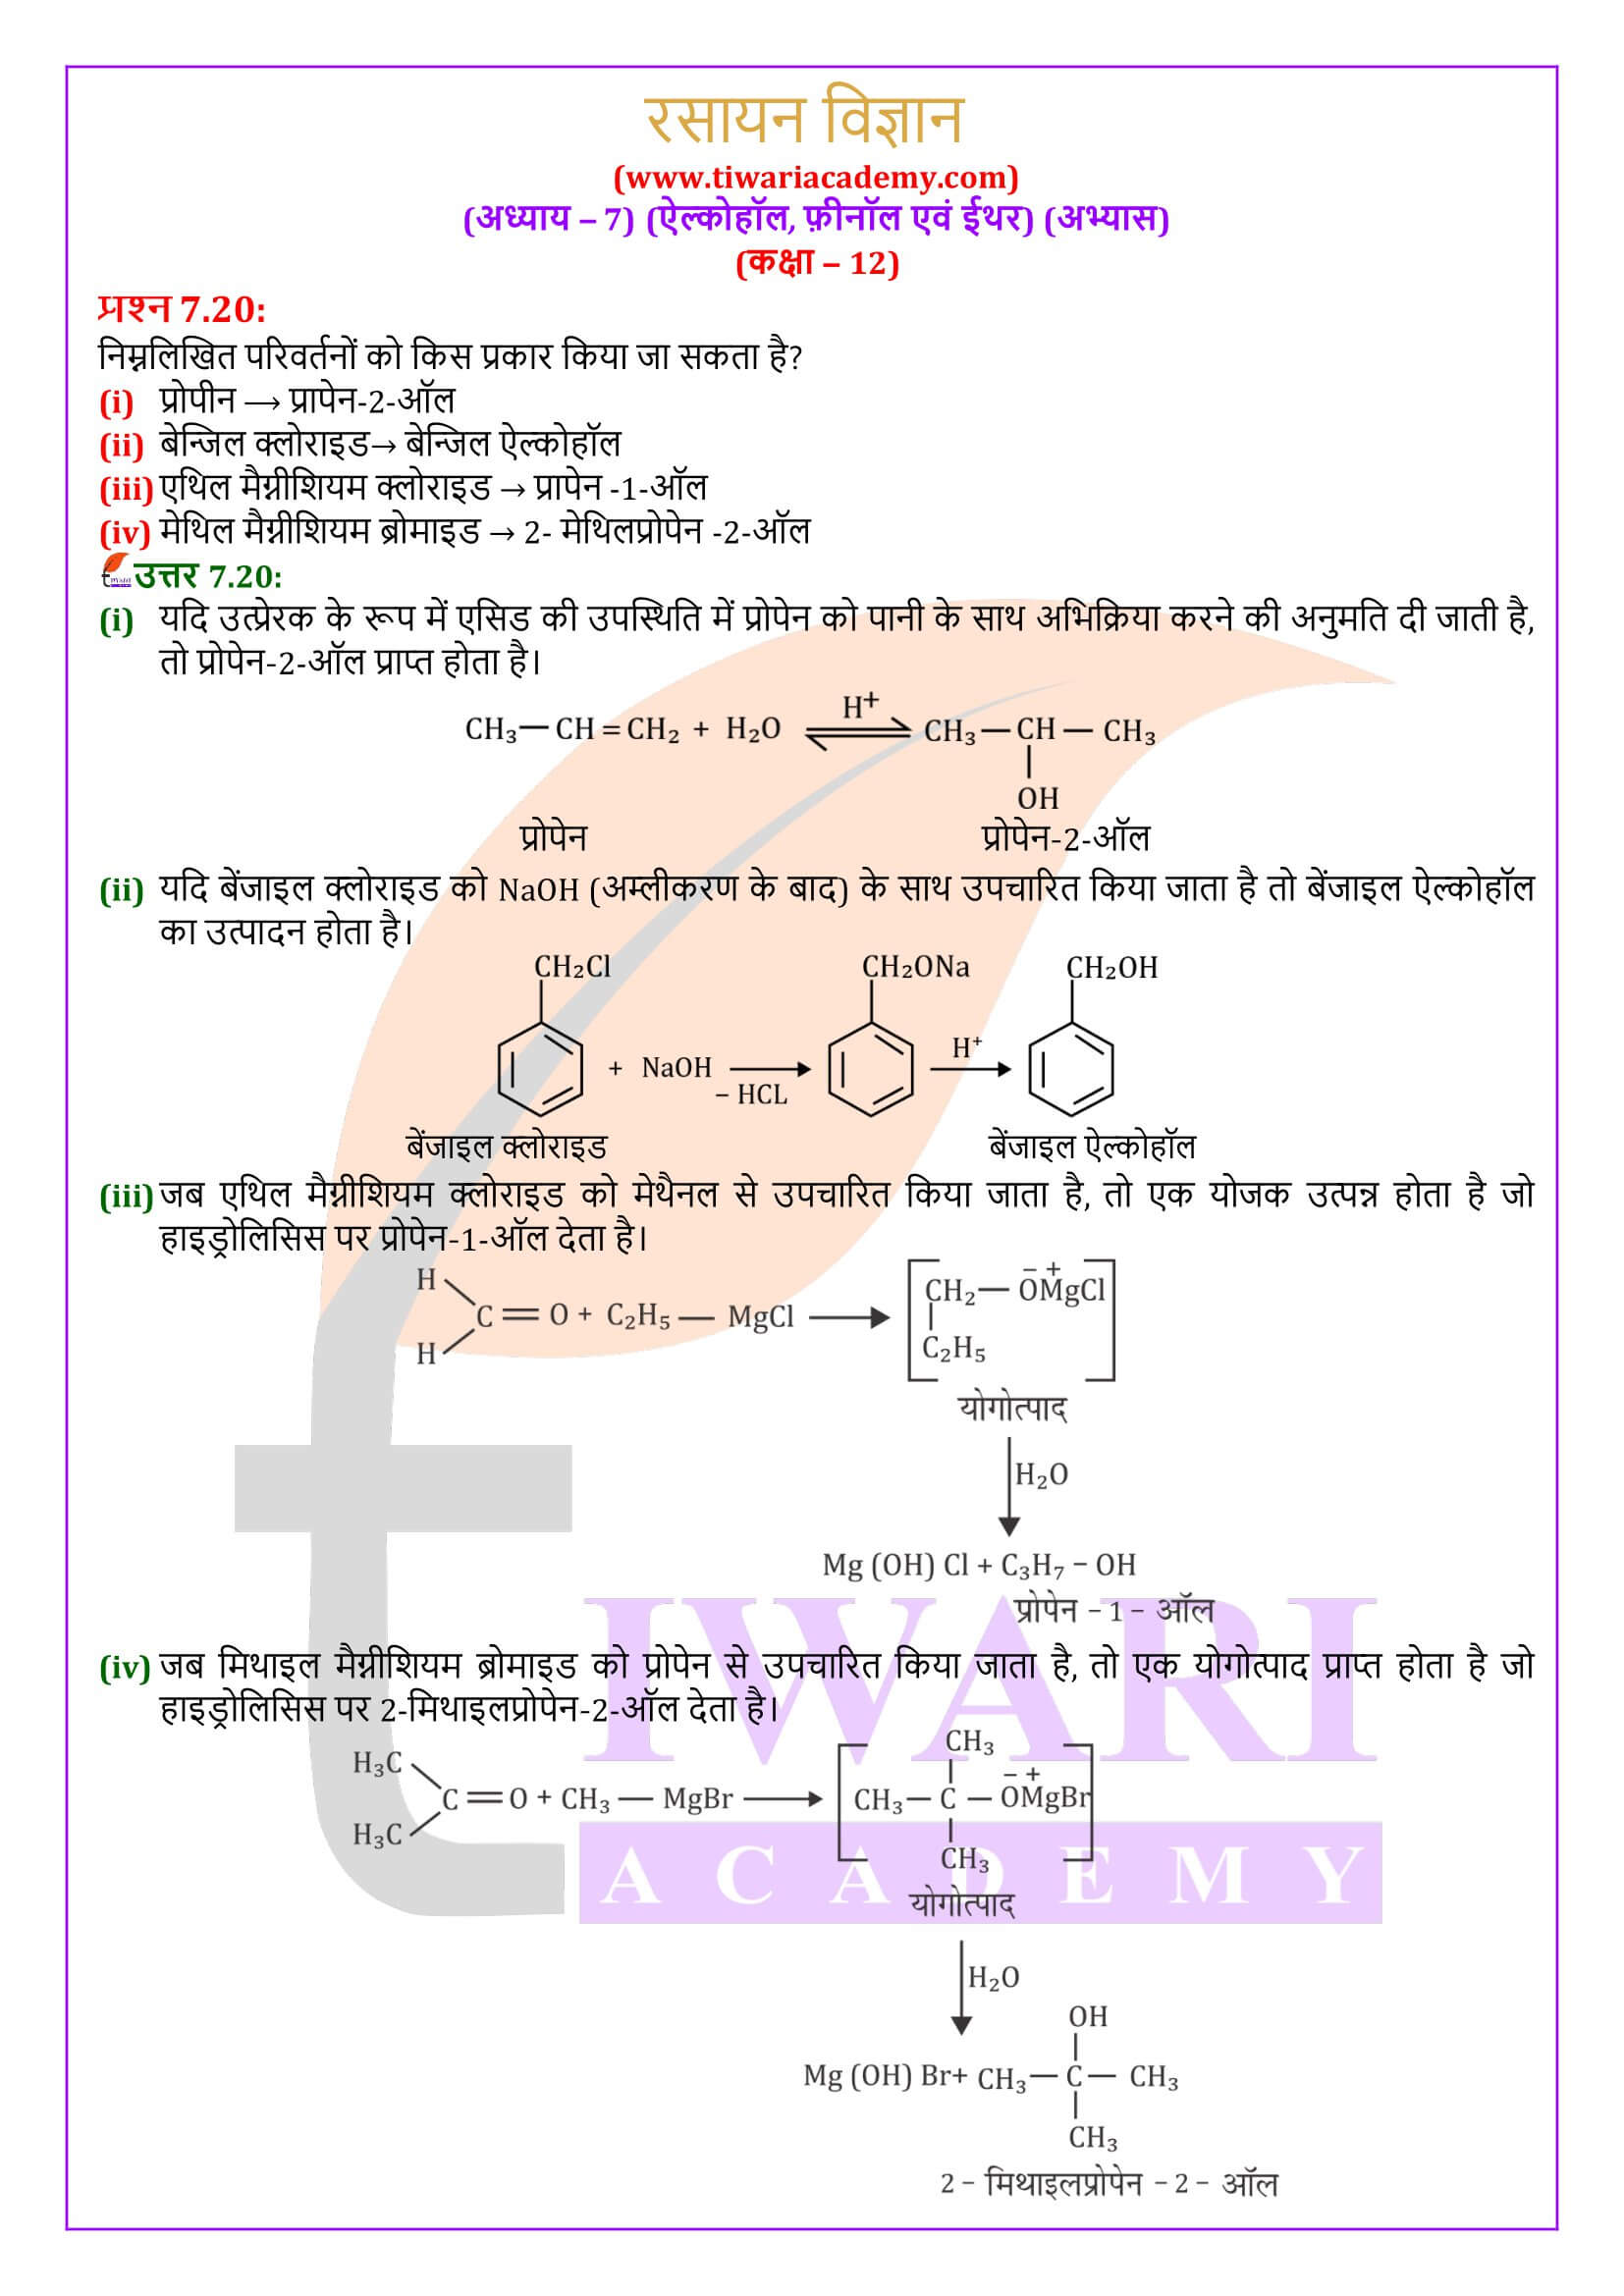 कक्षा 12 रसायन विज्ञान अध्याय 7 सभी प्रश्नों के हल